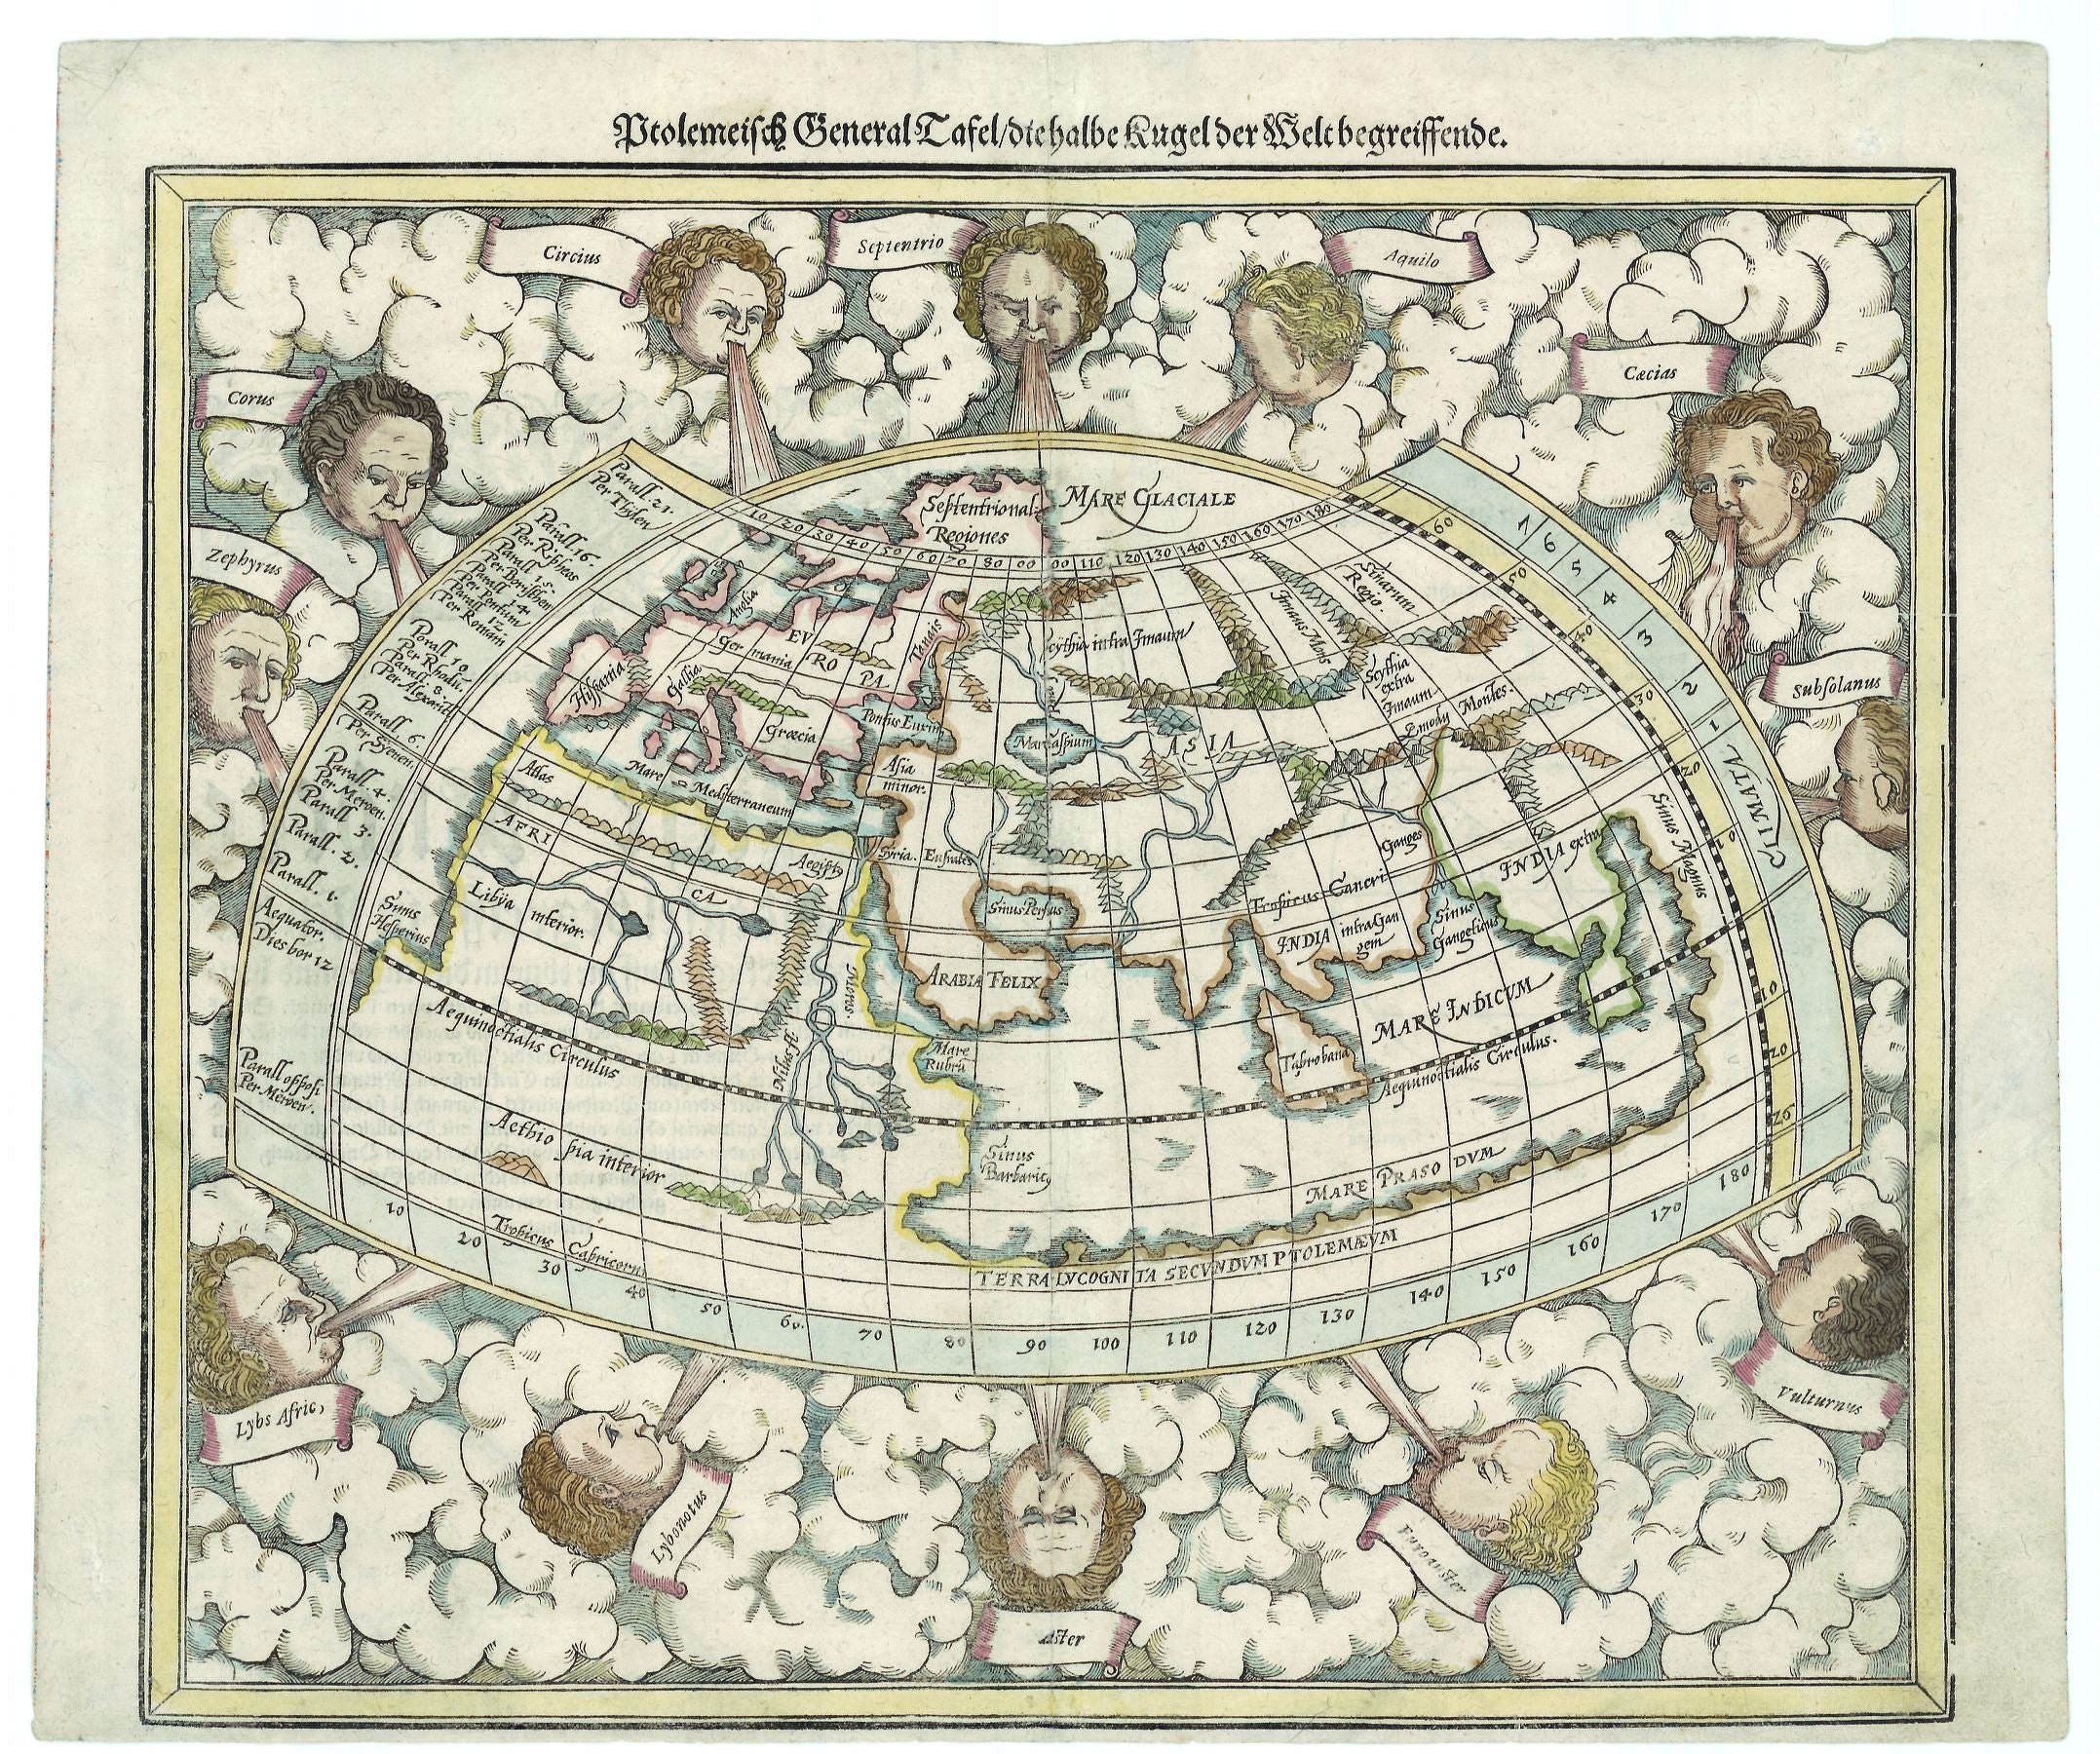 R2590  Münster, Sebastian: Ptolemeisch General Tafel/Die halbe Kugel der Welt begreiffende. 1588